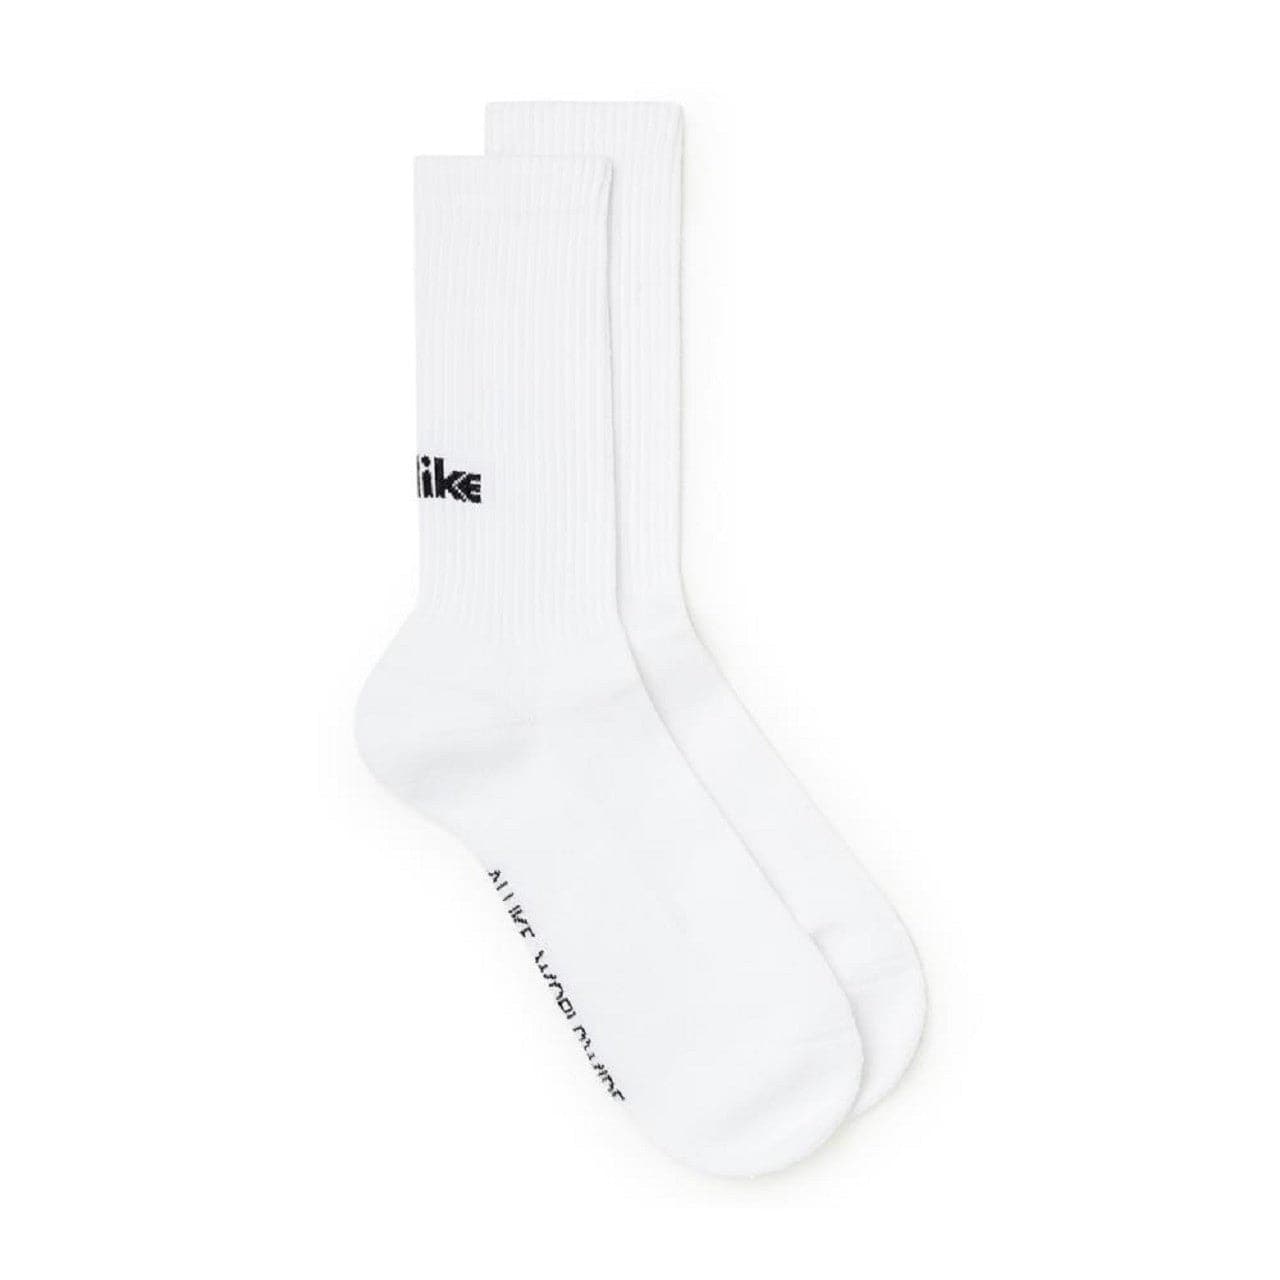 Image of Allike Tennis Socks 2-Pack (White / Black)